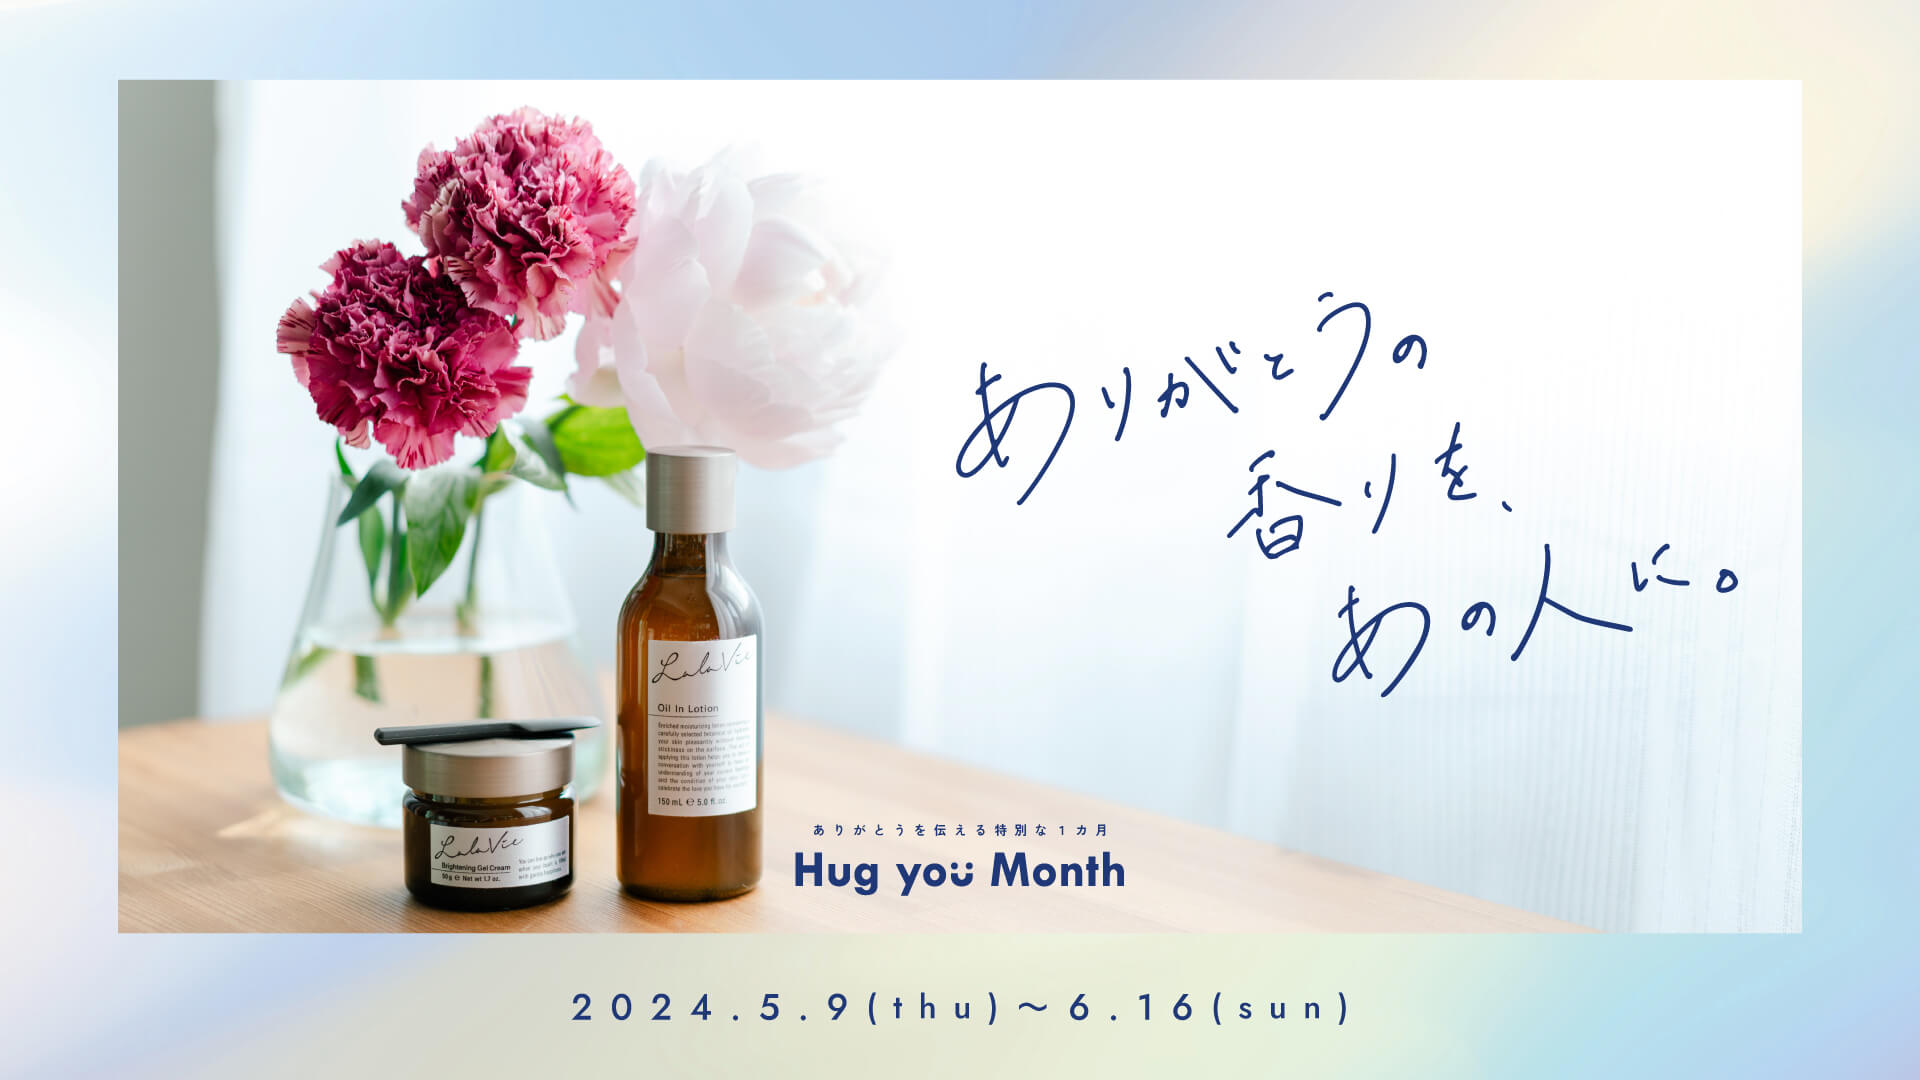 ありがとうの香りを、あの人に。ありがとうの気持ちを伝える特別な1か月間『Hug you Month』開催5月9日(木)～6月16日(日)まで